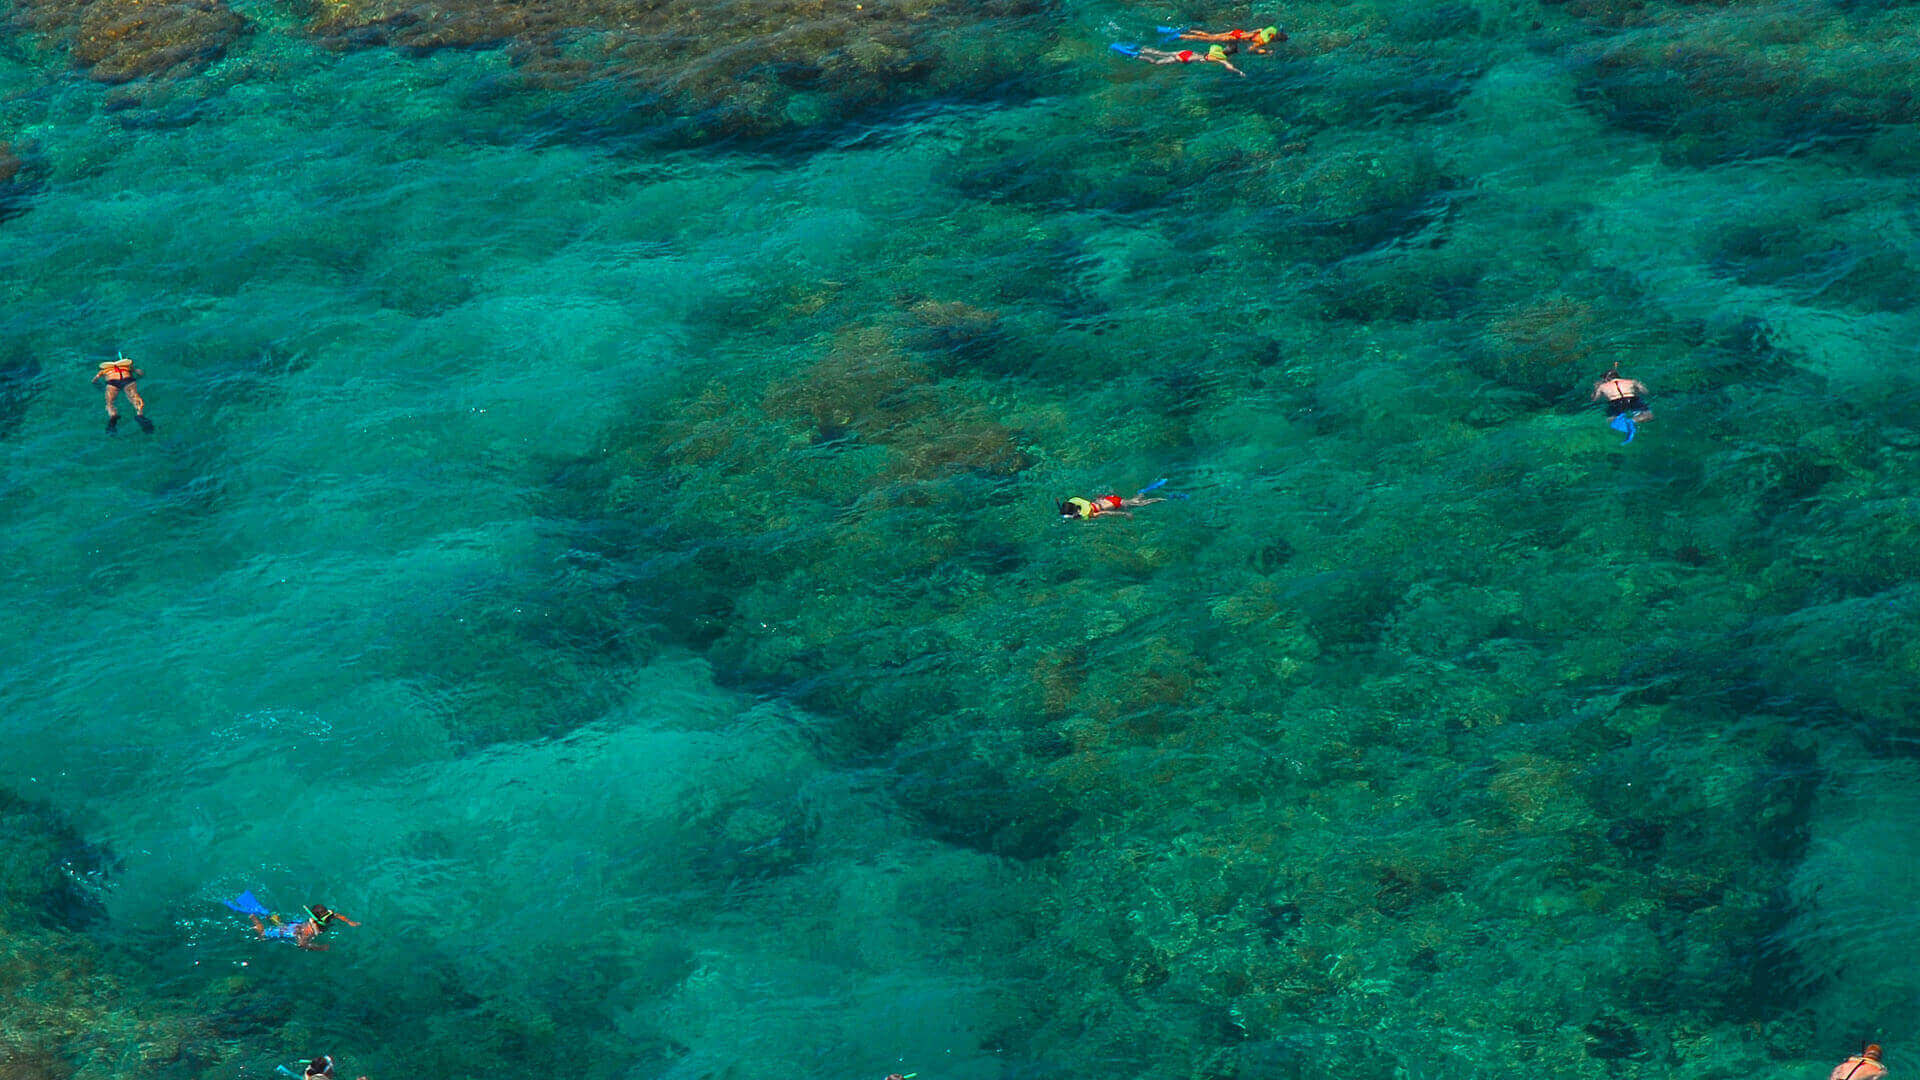 Image of people reef snorkeling in the Key West waters